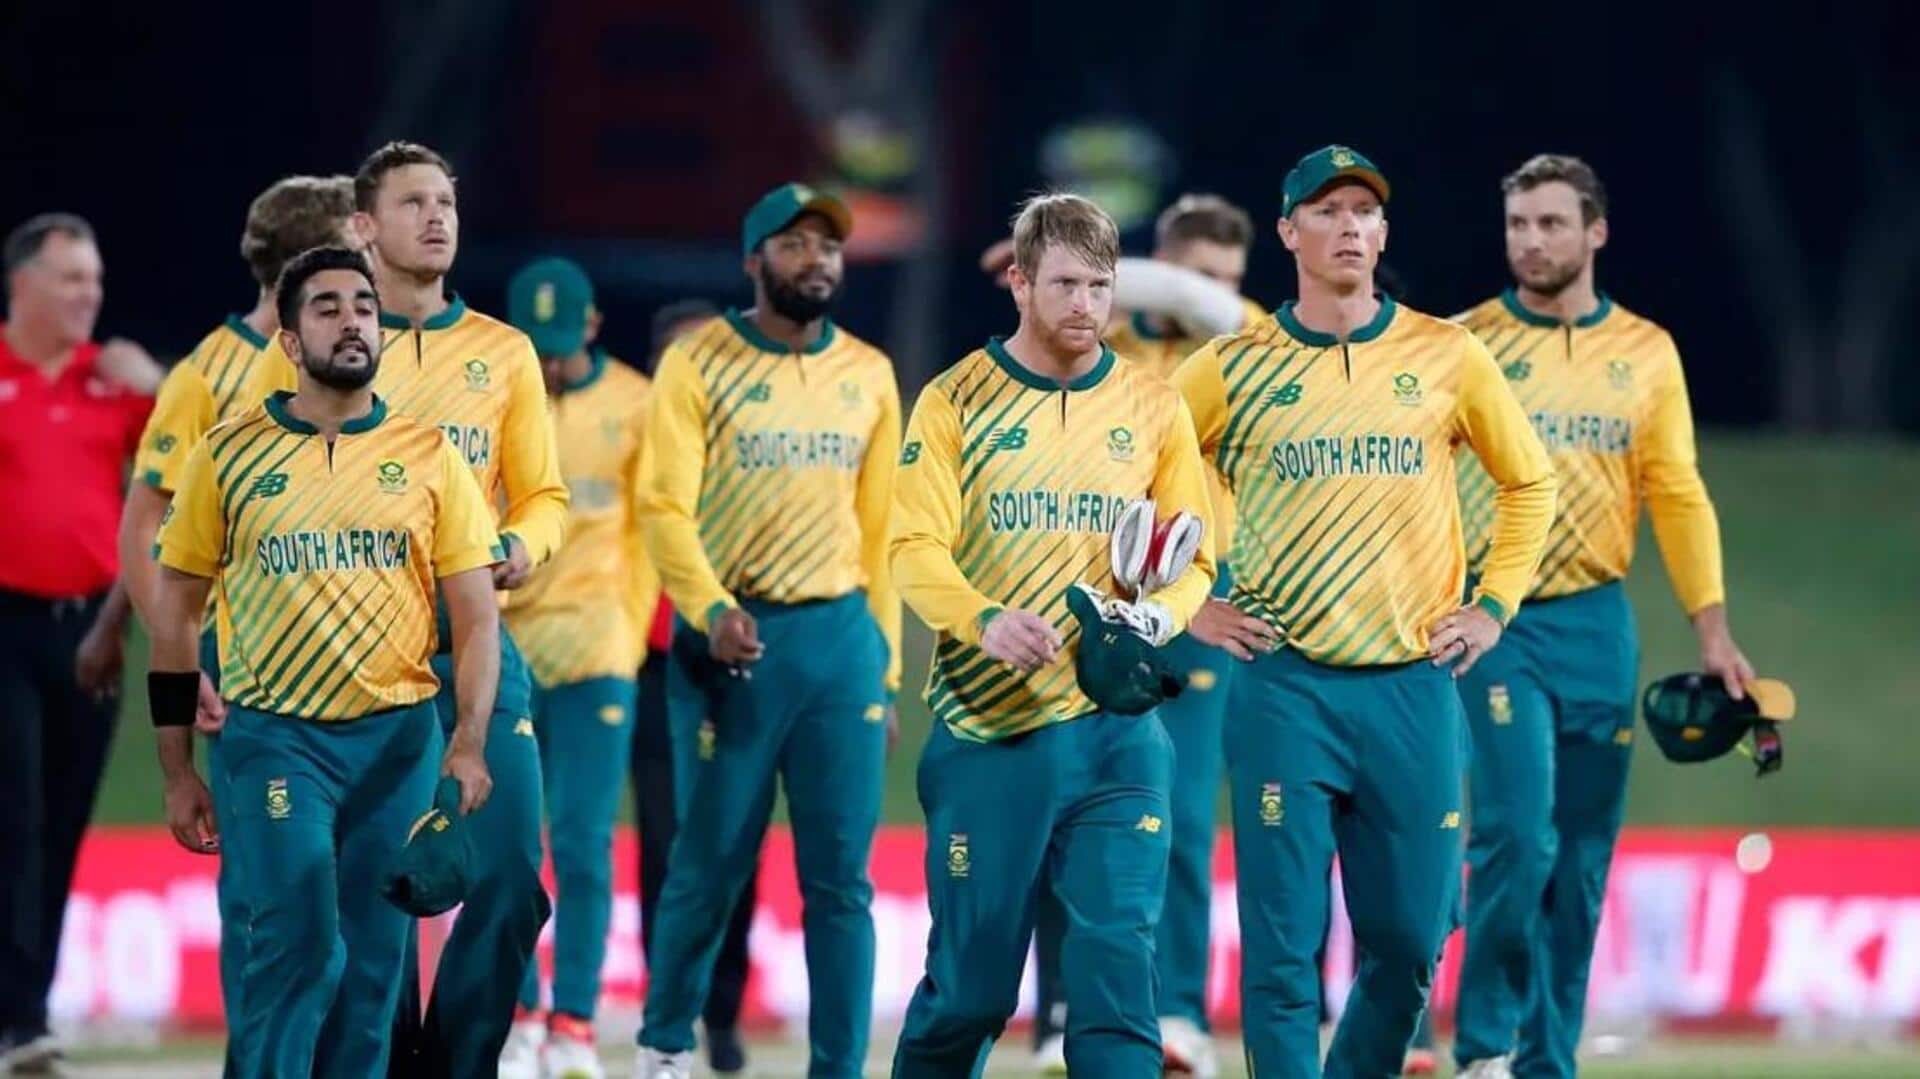 #NewsBytesExplainer: विश्व क्रिकेट में सबसे बदकिस्मत टीम है दक्षिण अफ्रीका, जानिए कैसे लगा चोकर्स का ठप्पा